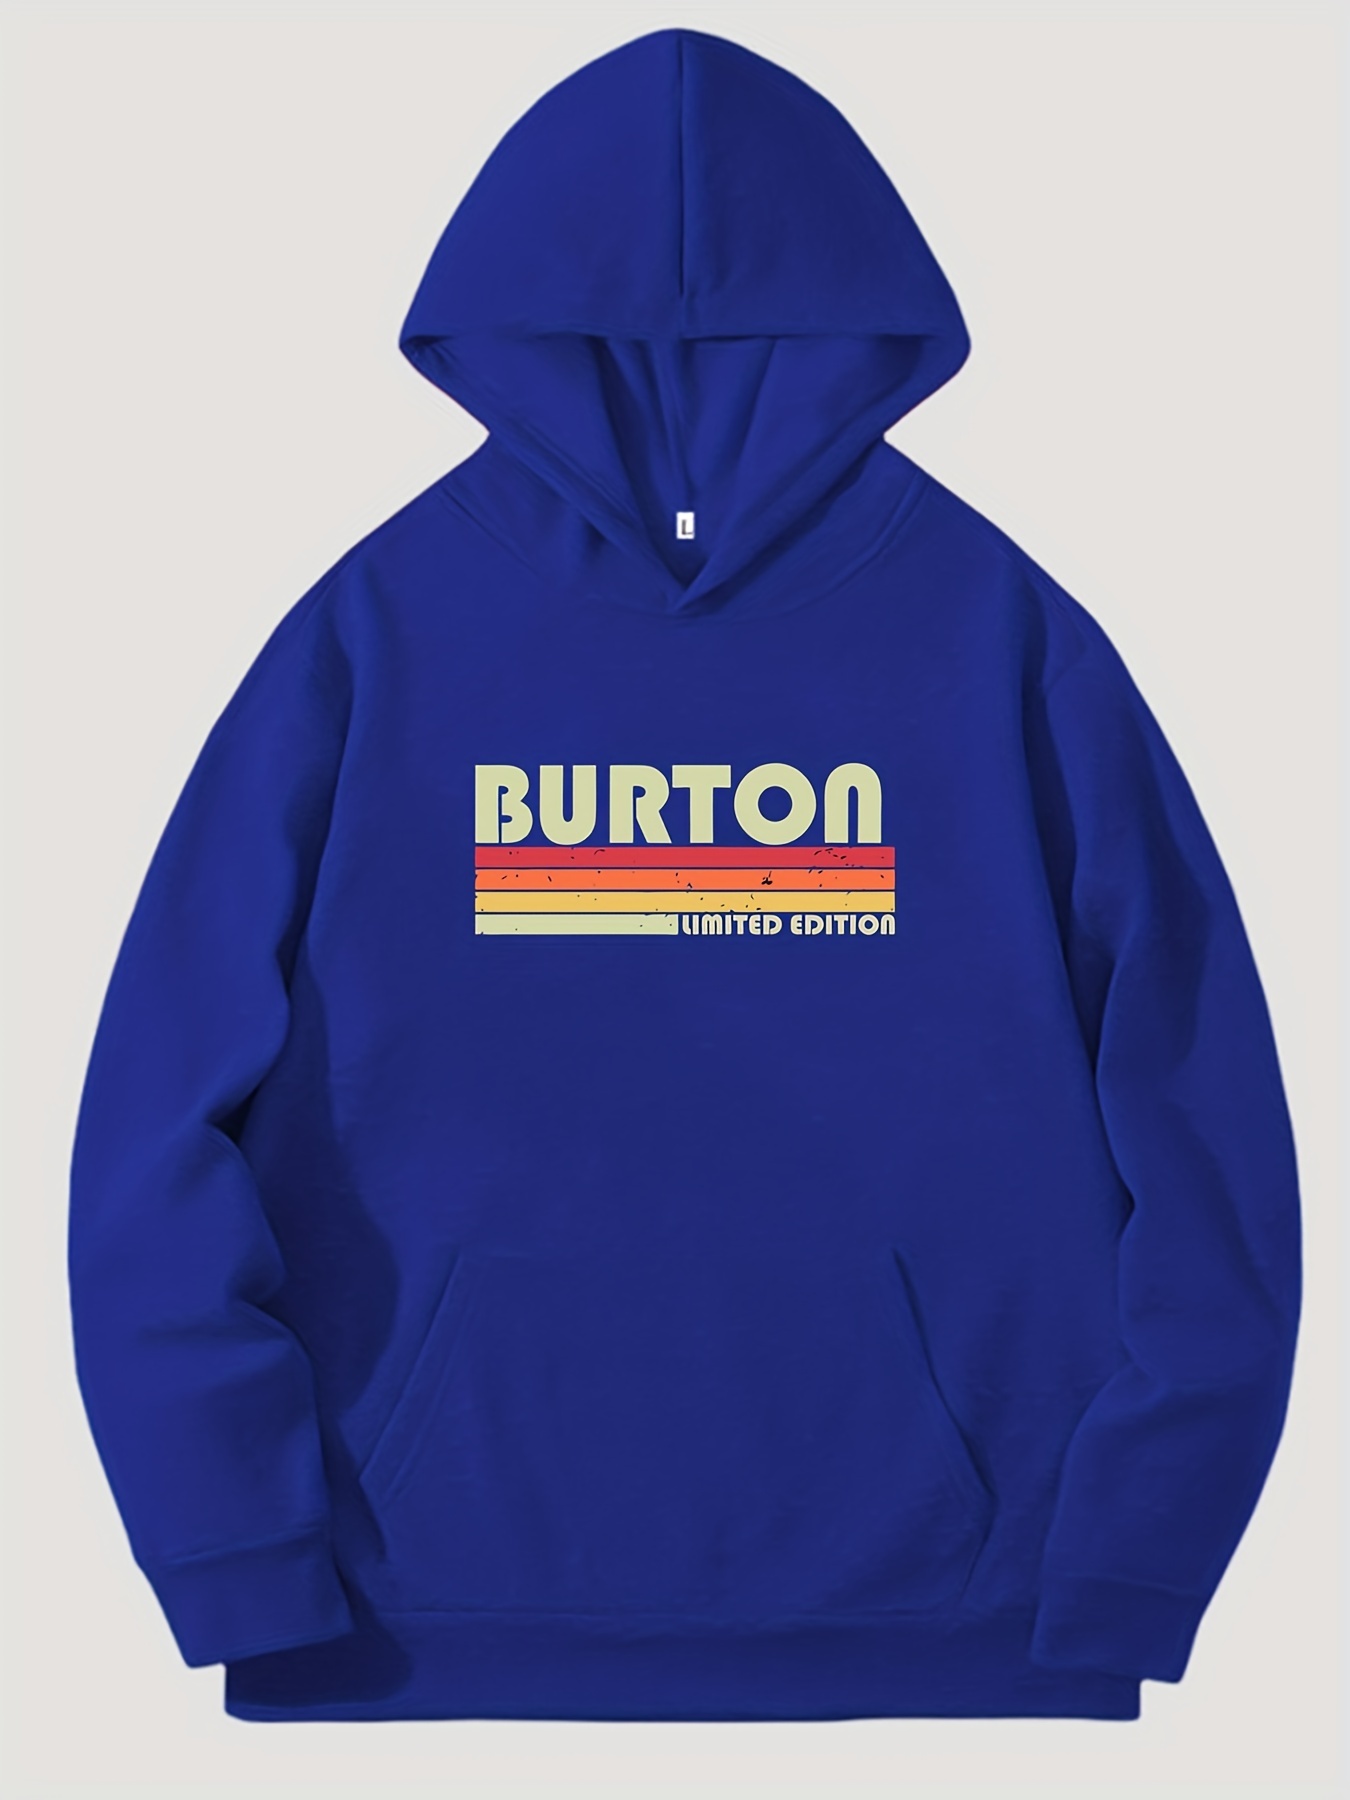 cool hoodies designs